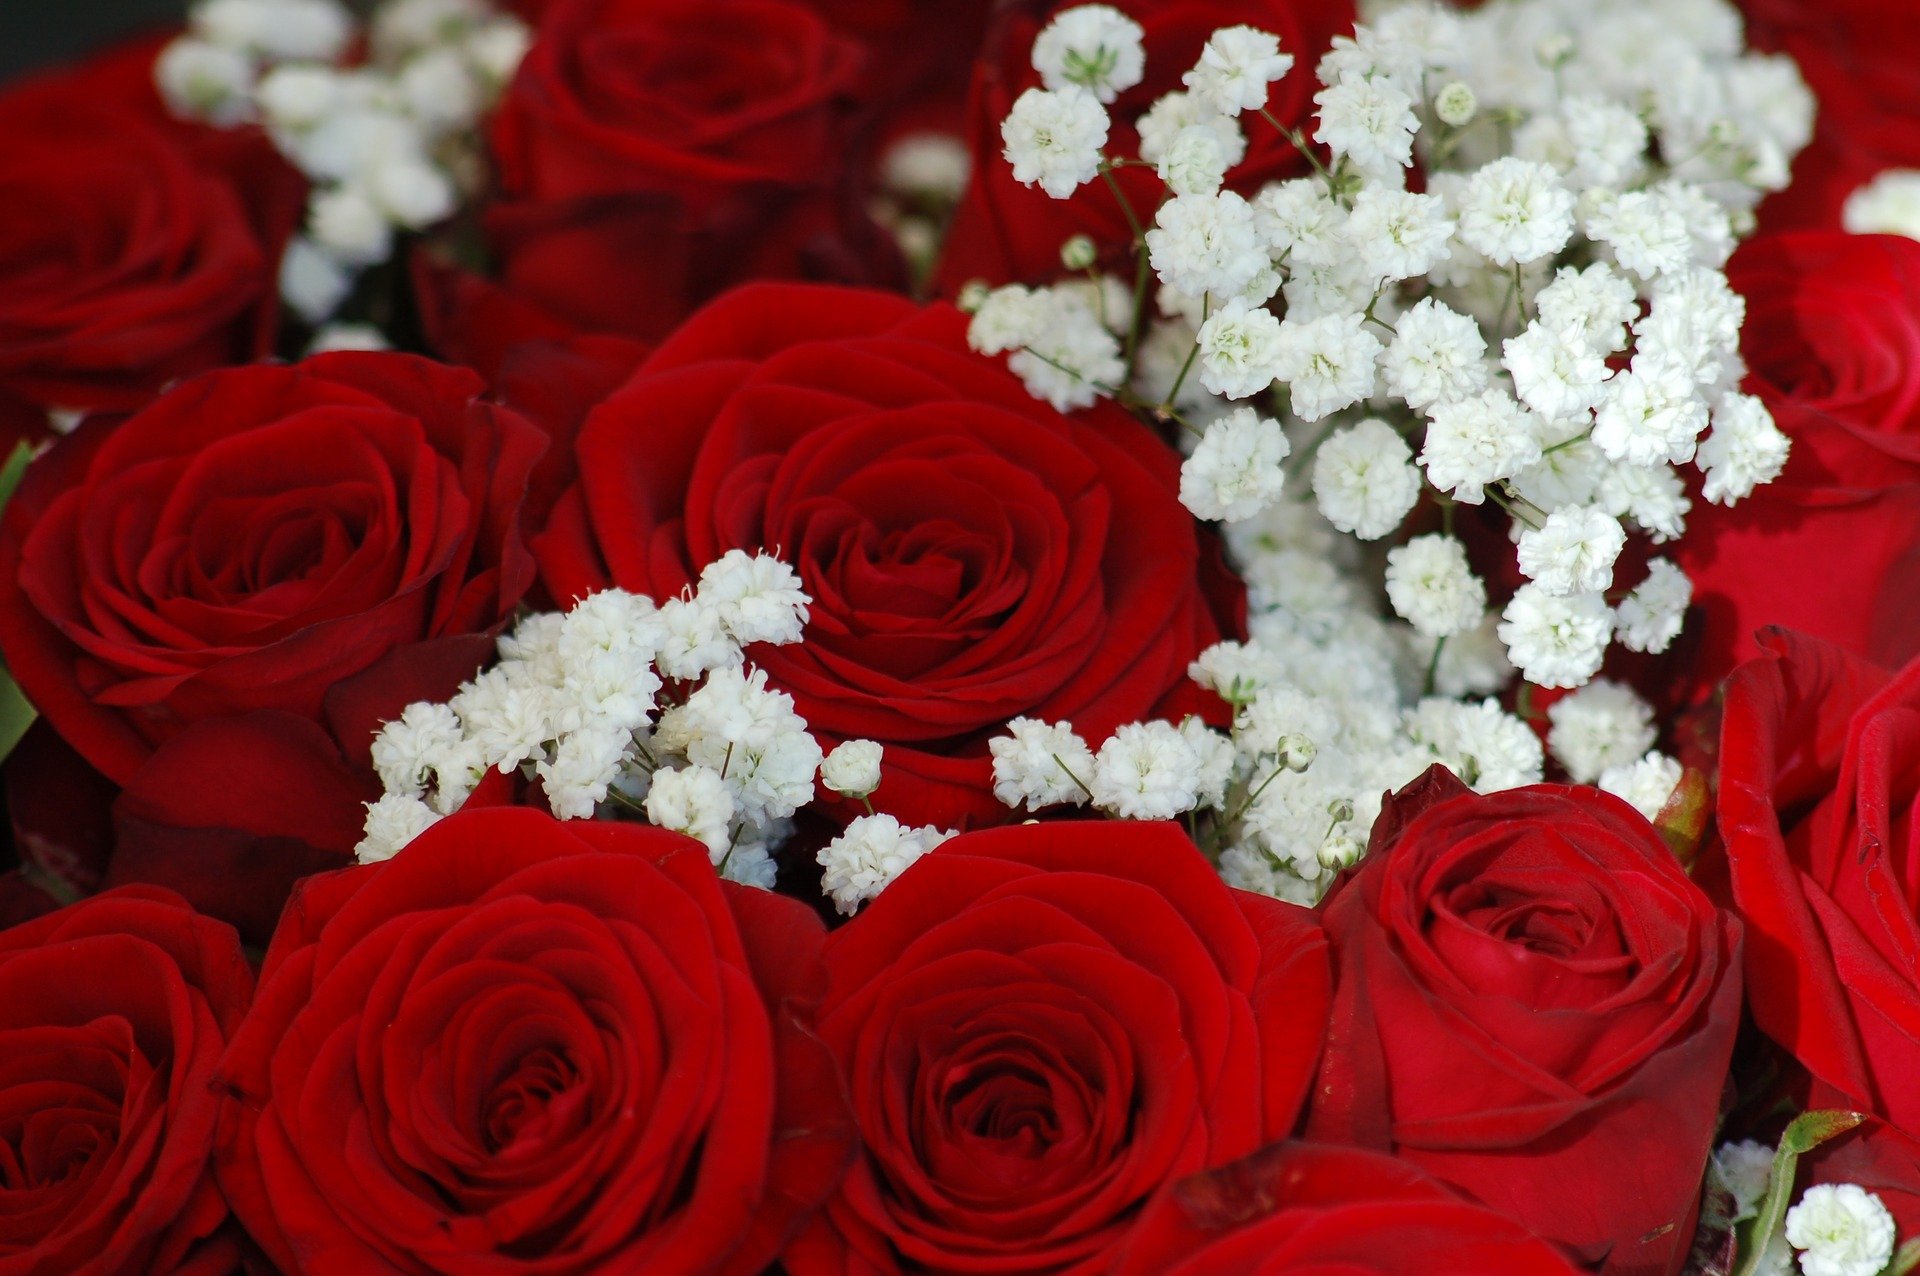 Роз оо. Красивый букет роз. Красивые красные розы. Шикарный букет роз.